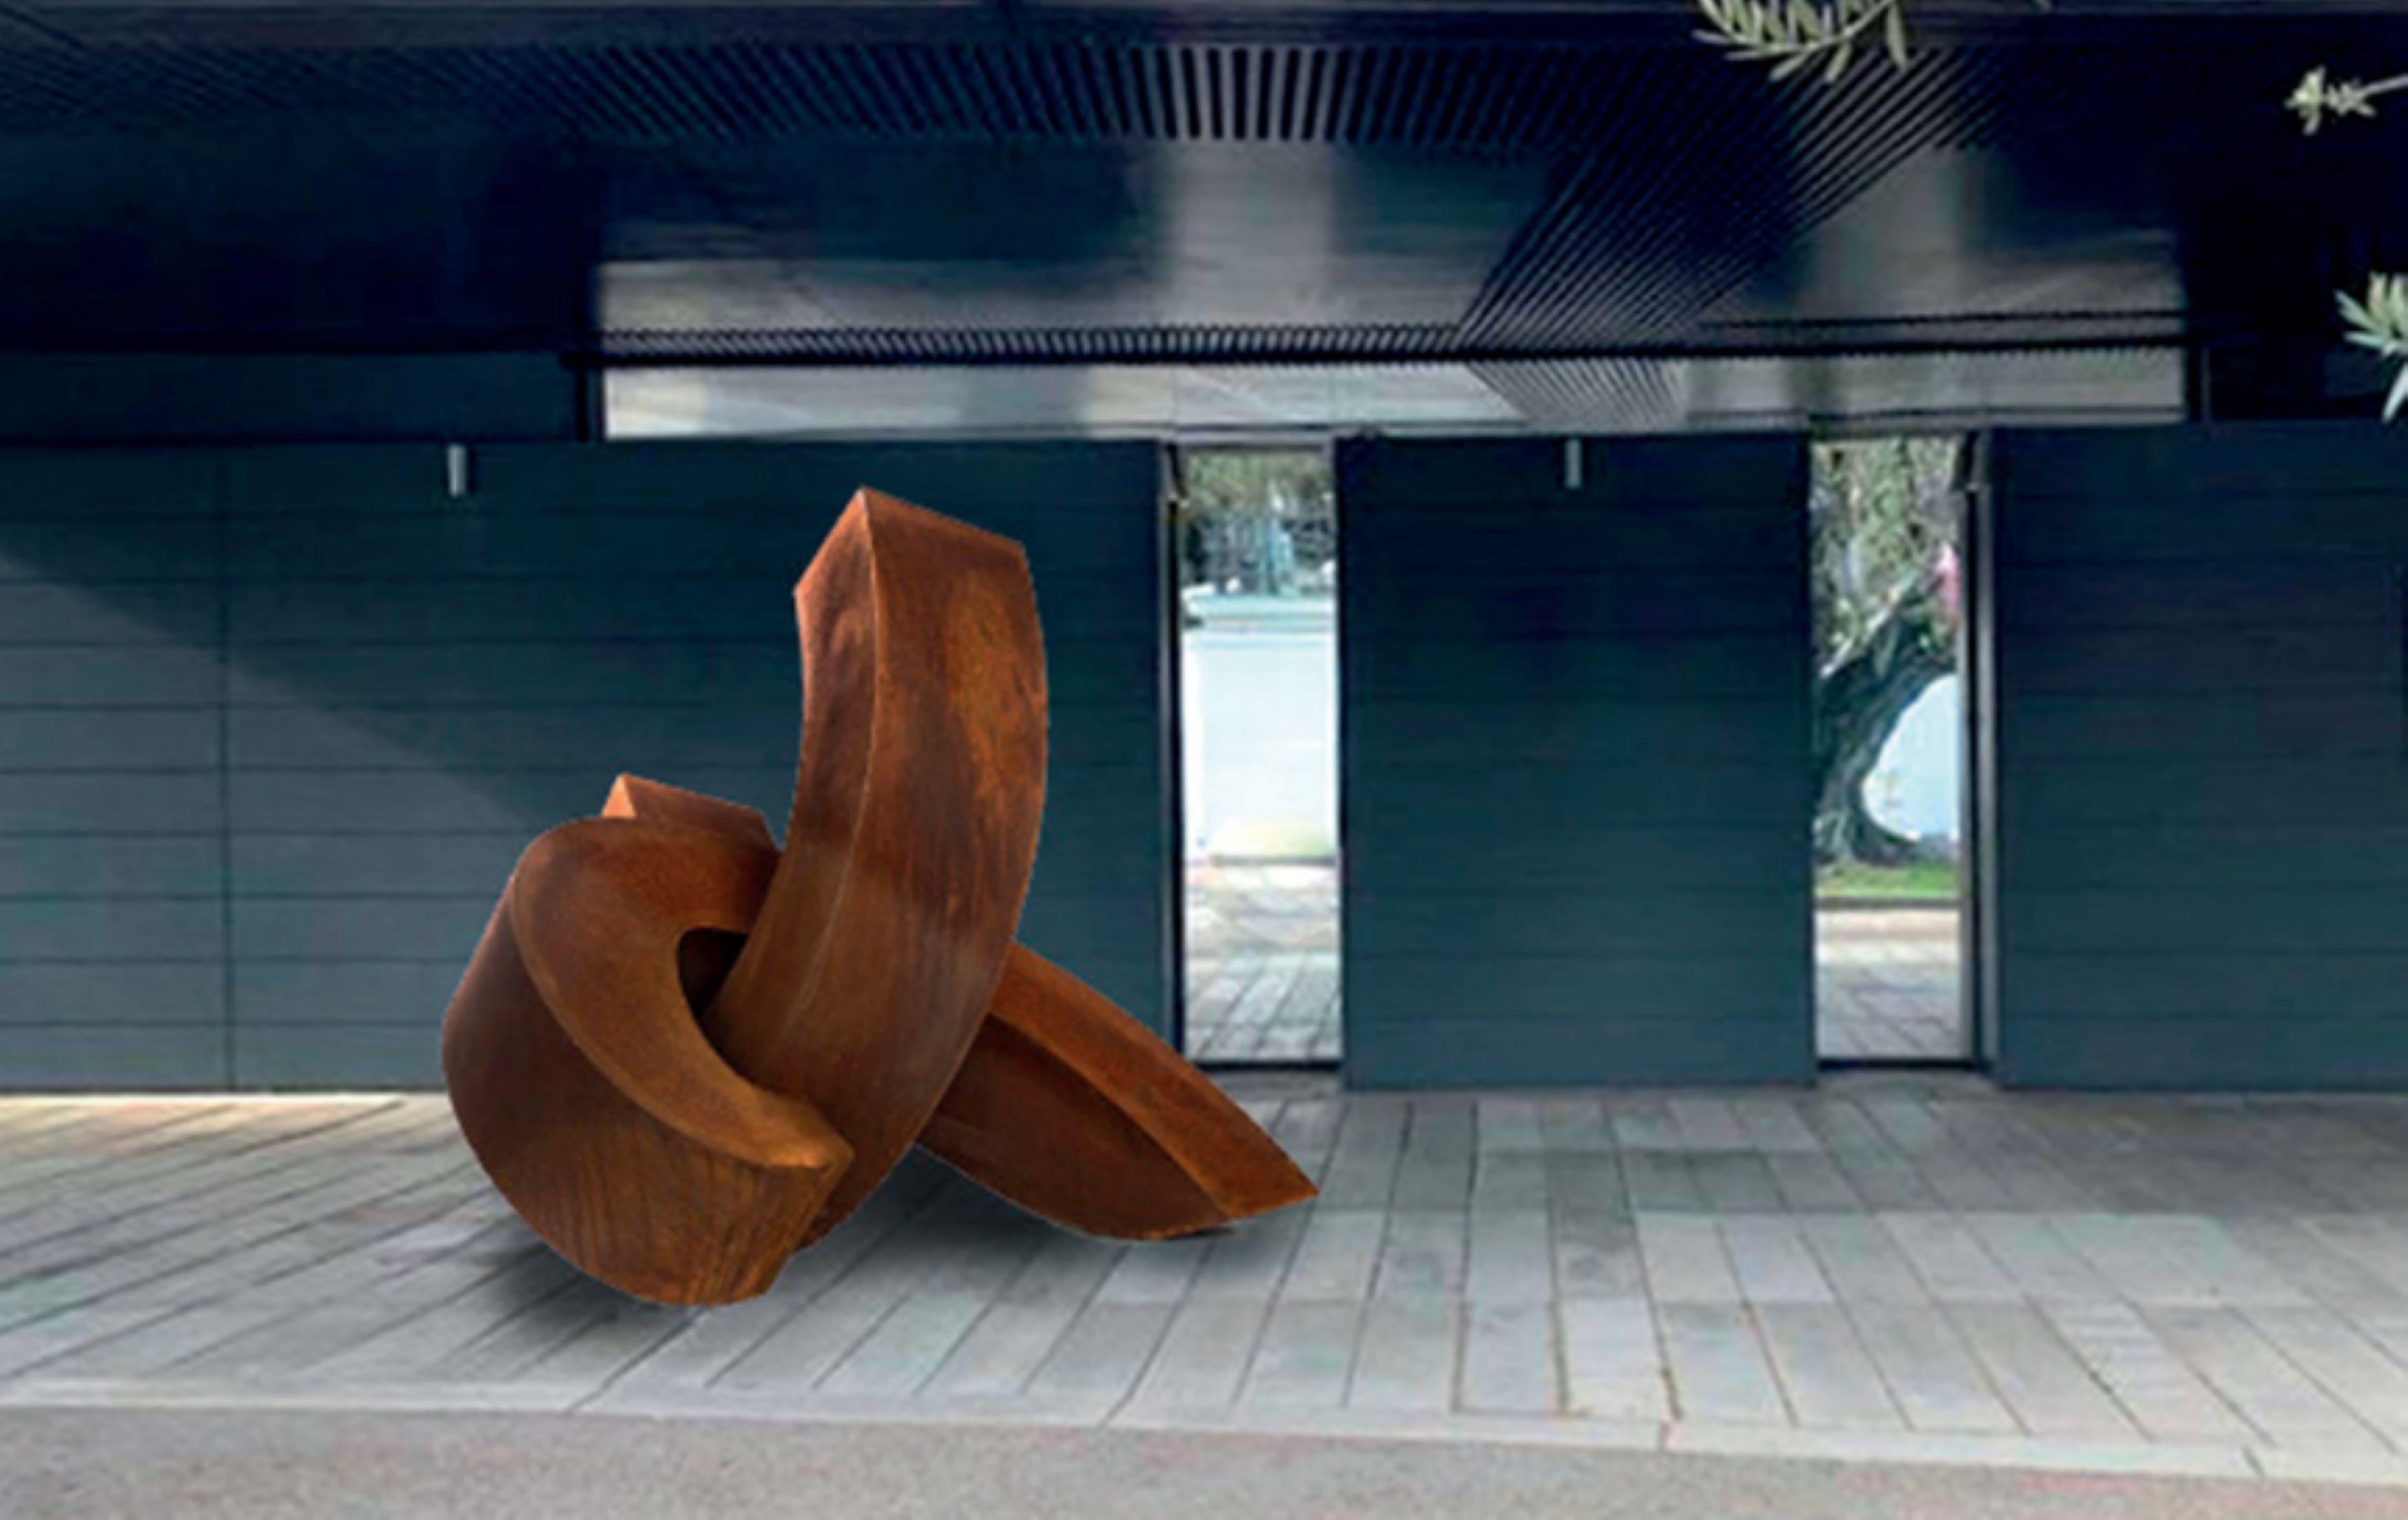 Bildhauerei von Antoine Leclerq
Titel: STAY
Abmessungen: 6',5'' x 6',5'' / 200 x 200 cm
Medien : Cortenstahl
Auflage: 1/3

